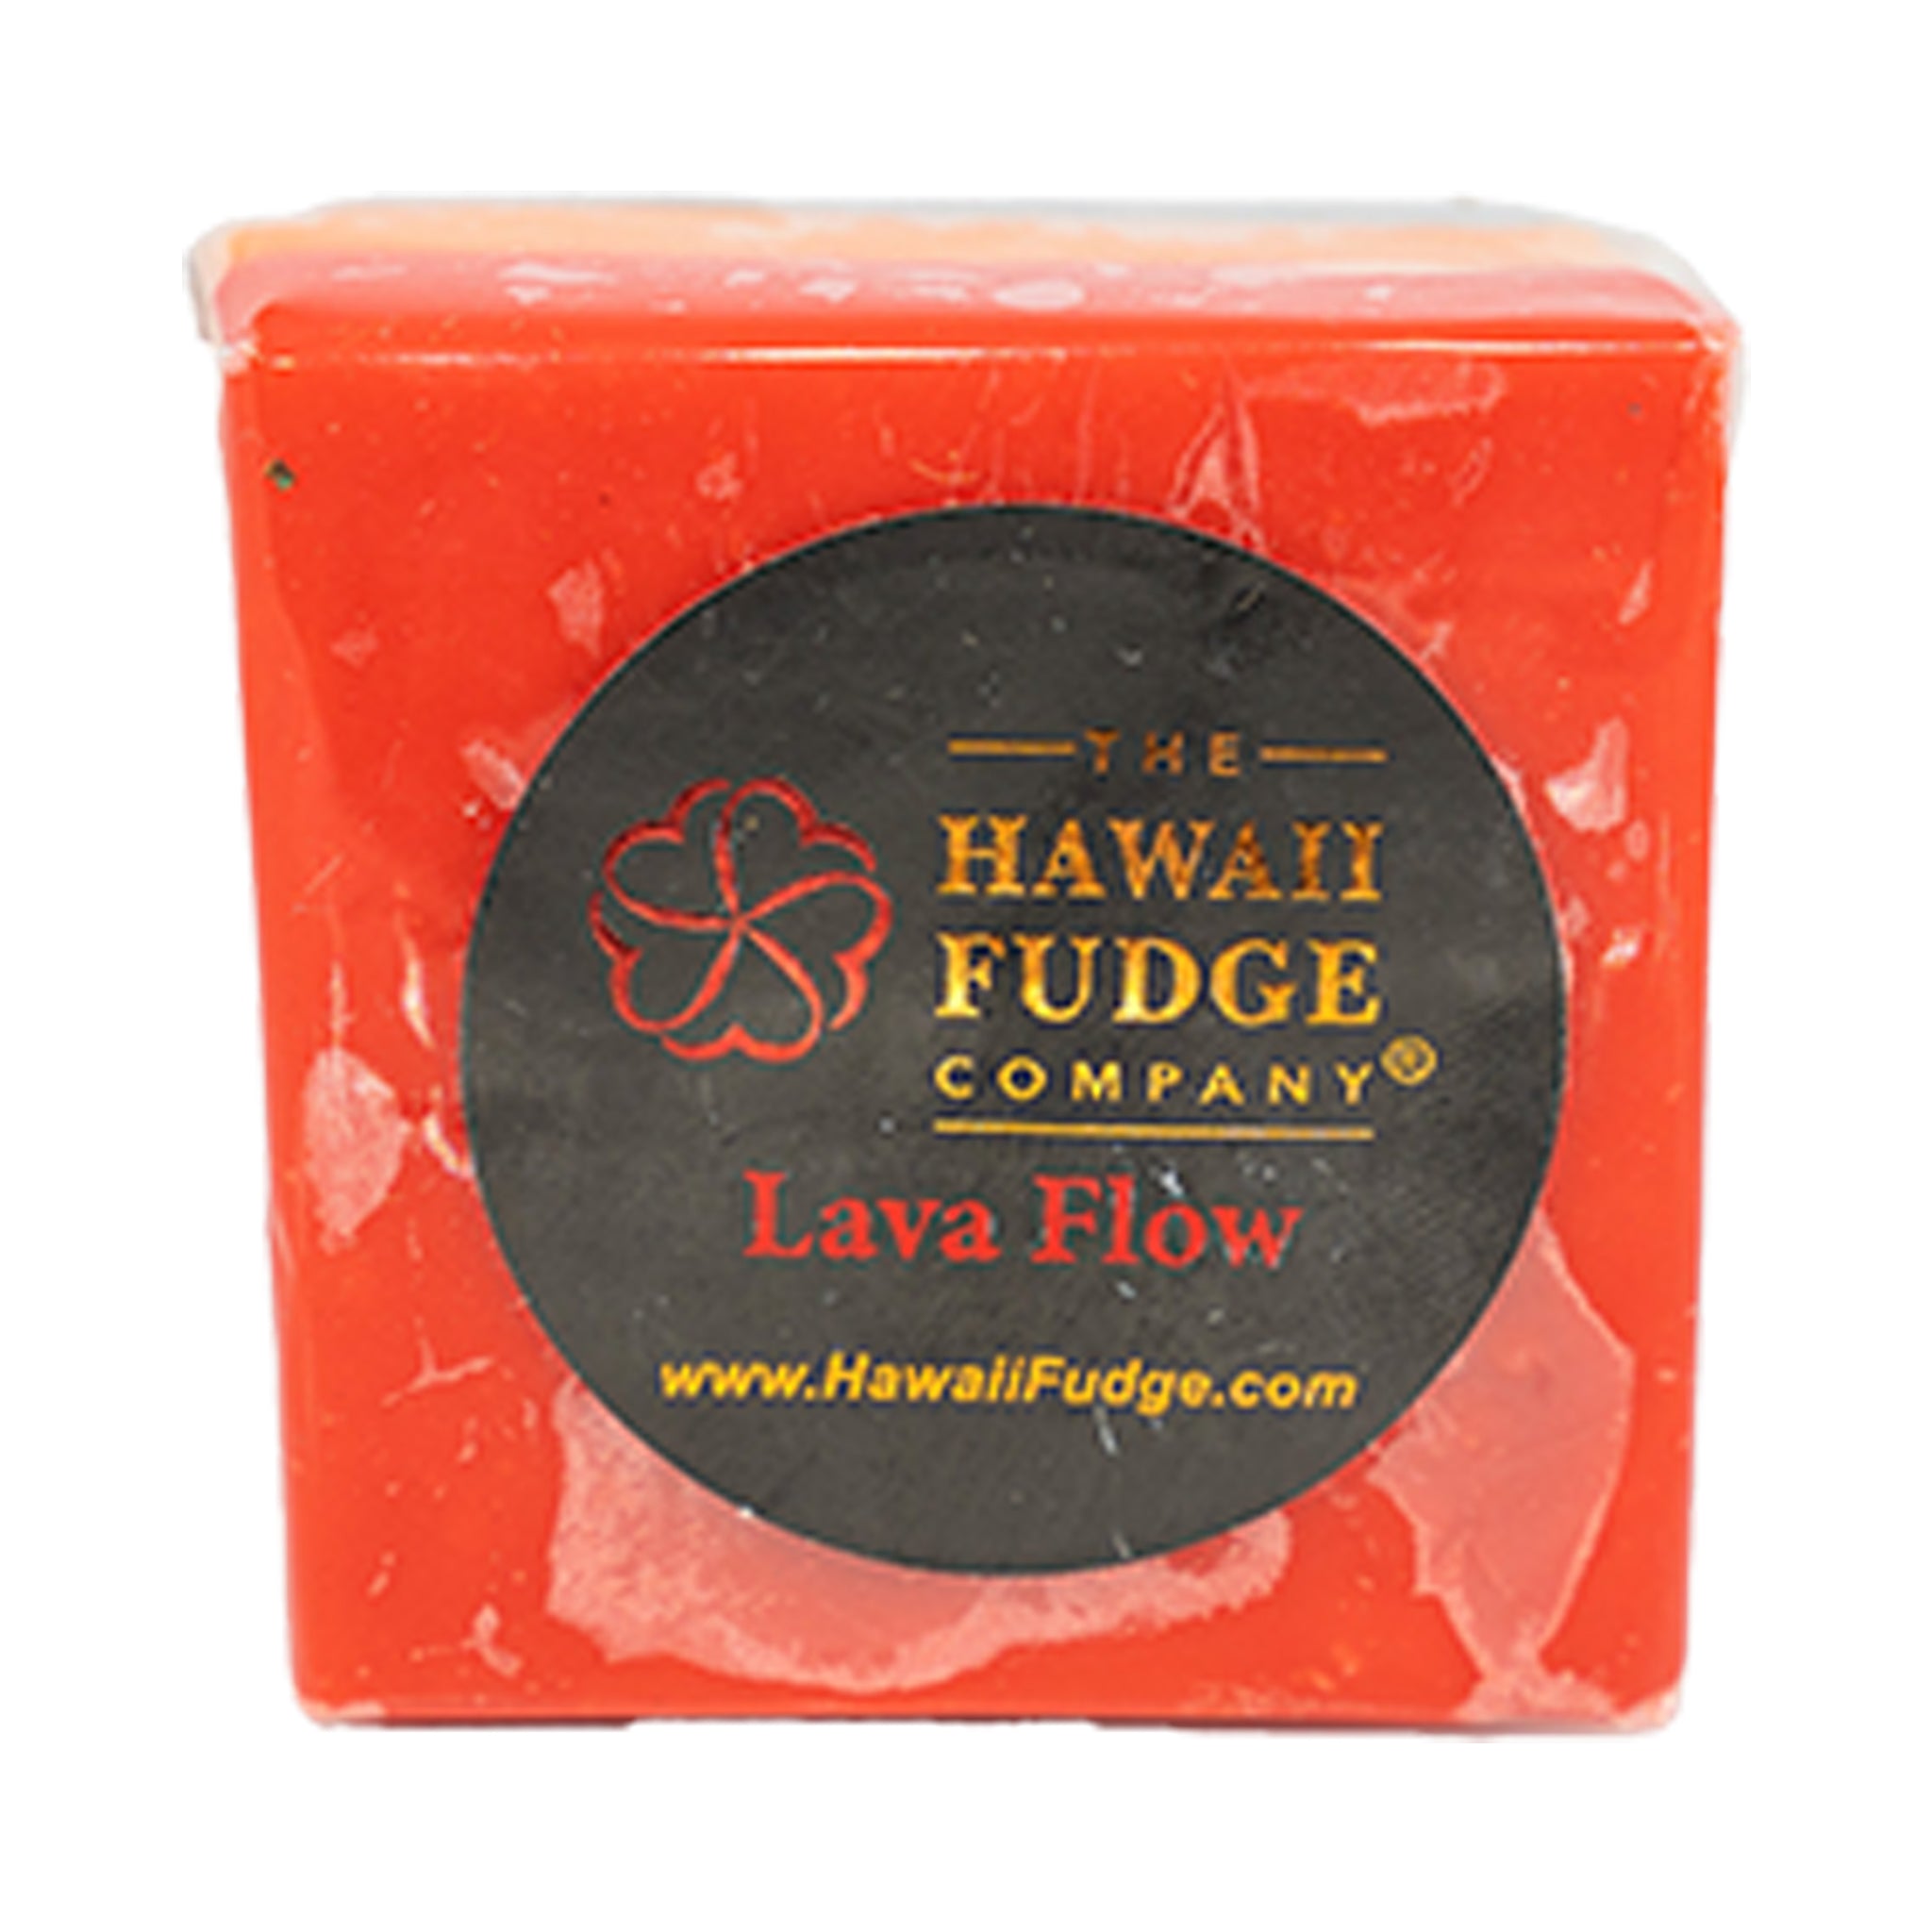 Lava Flow Fudge